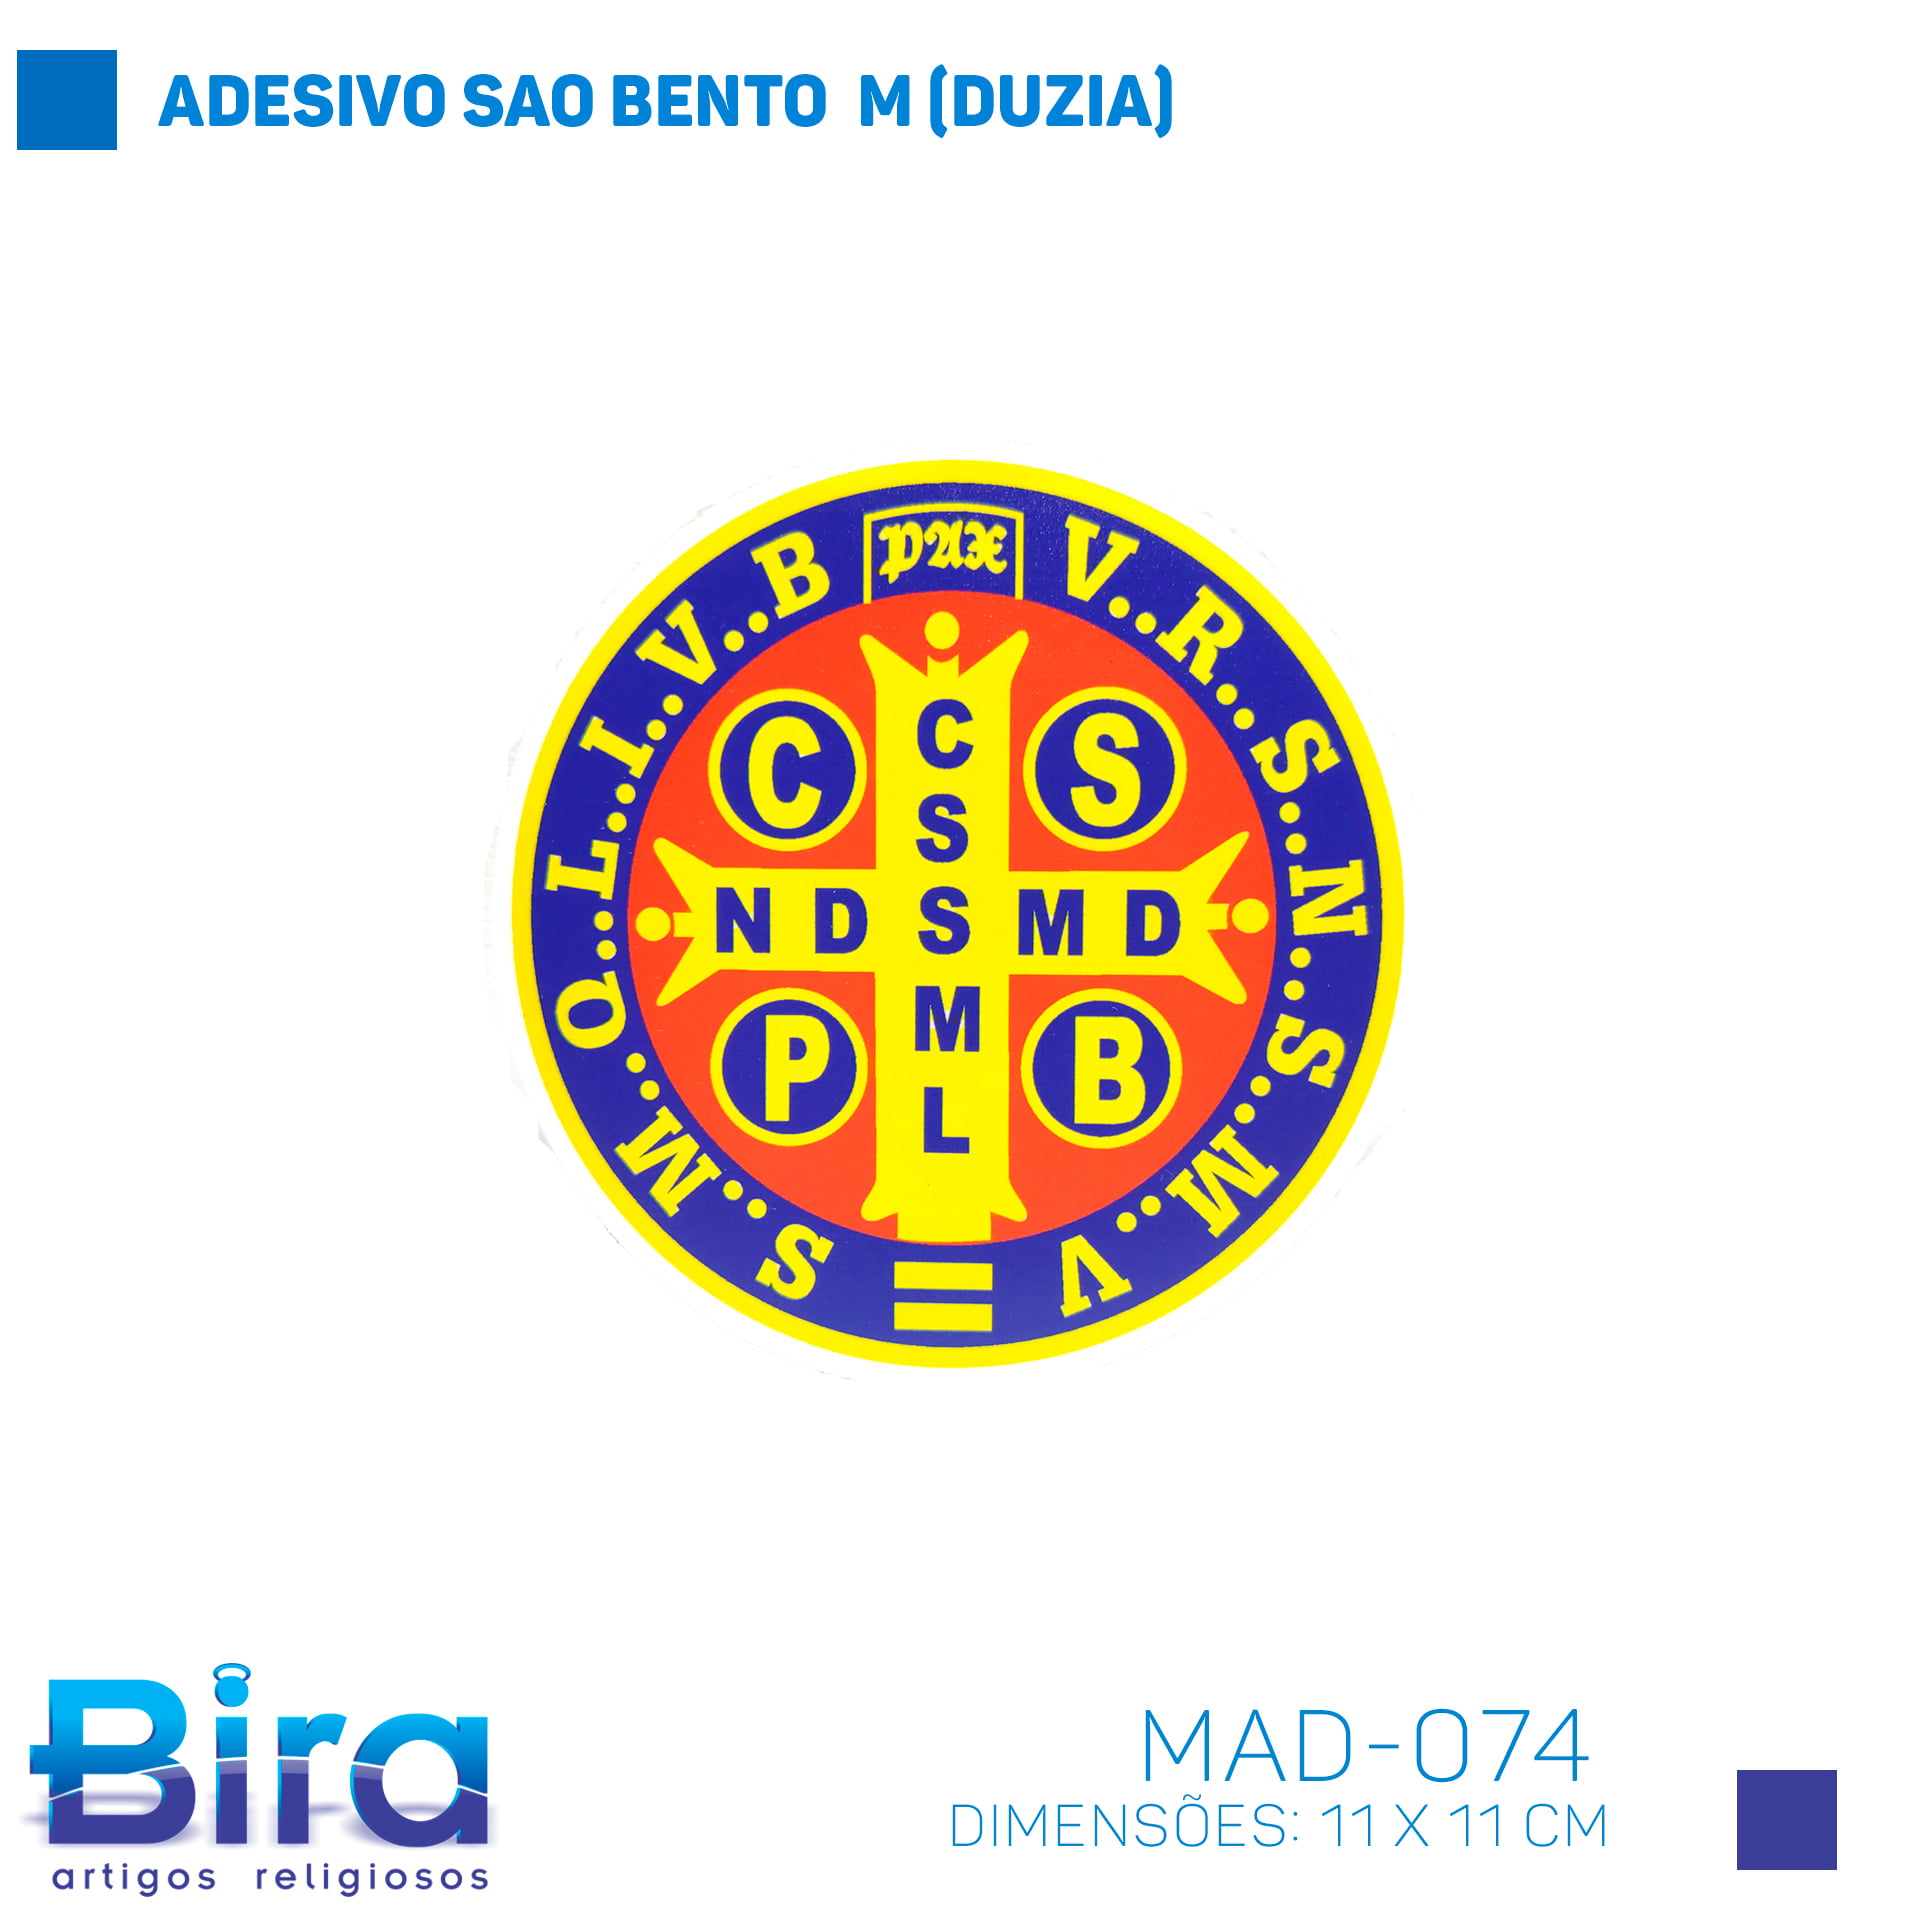 Bira Artigos Religiosos - ADESIVO SAO BENTO  M (DUZIA) - Cód. MAD-074